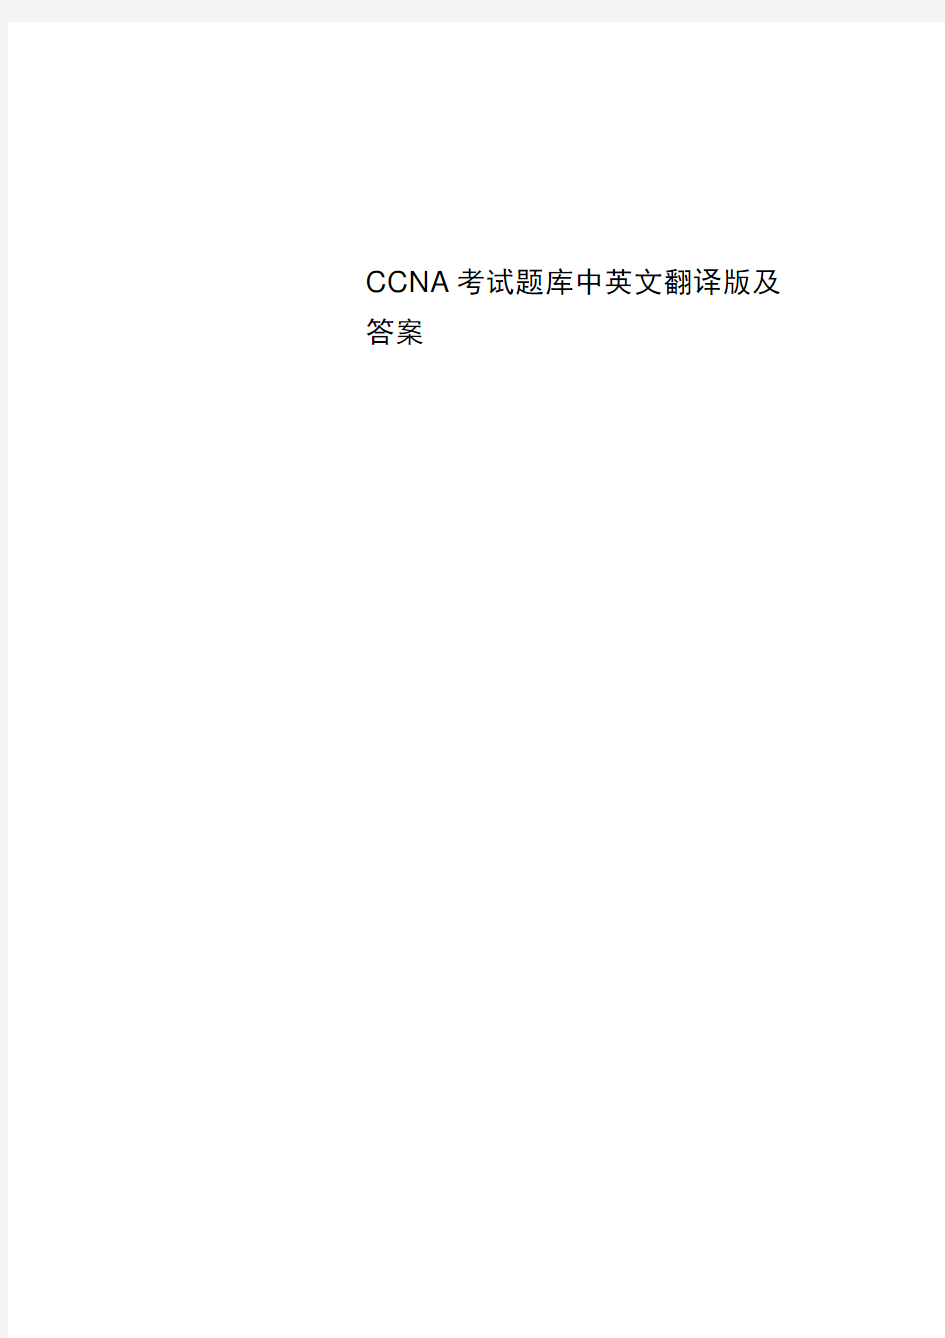 CCNA考试题库中英文翻译版及答案